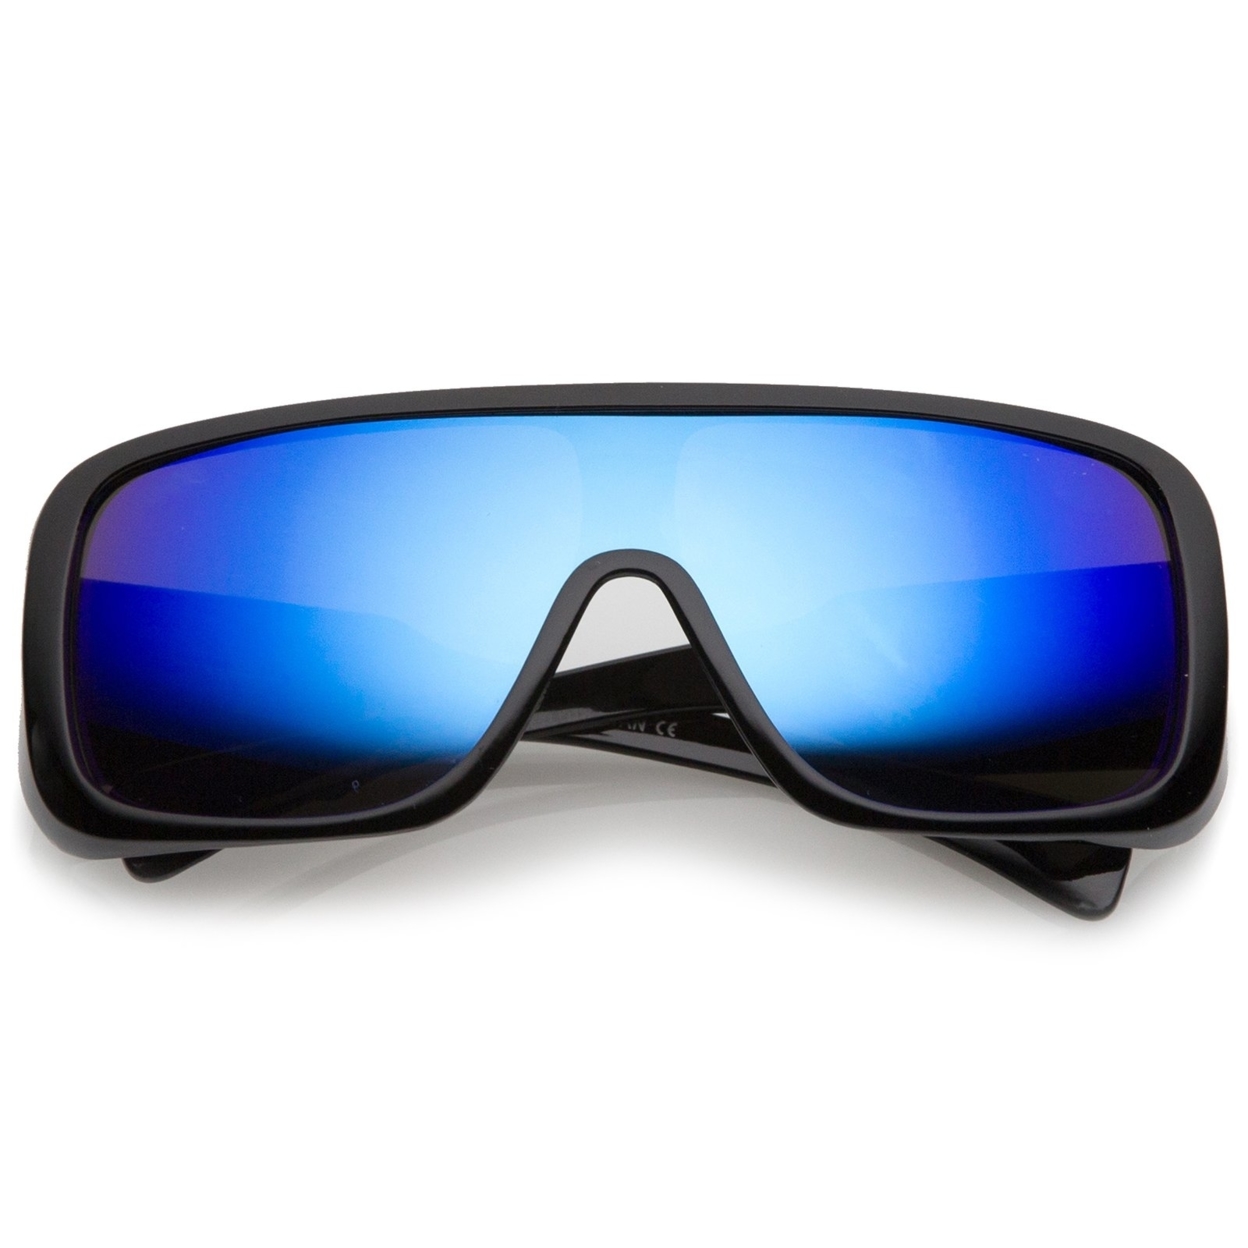 Men's Oversize Goggle Colored Mirror Mono Lens Shield Sunglasses 60mm - Black / Orange-Yellow Mirror